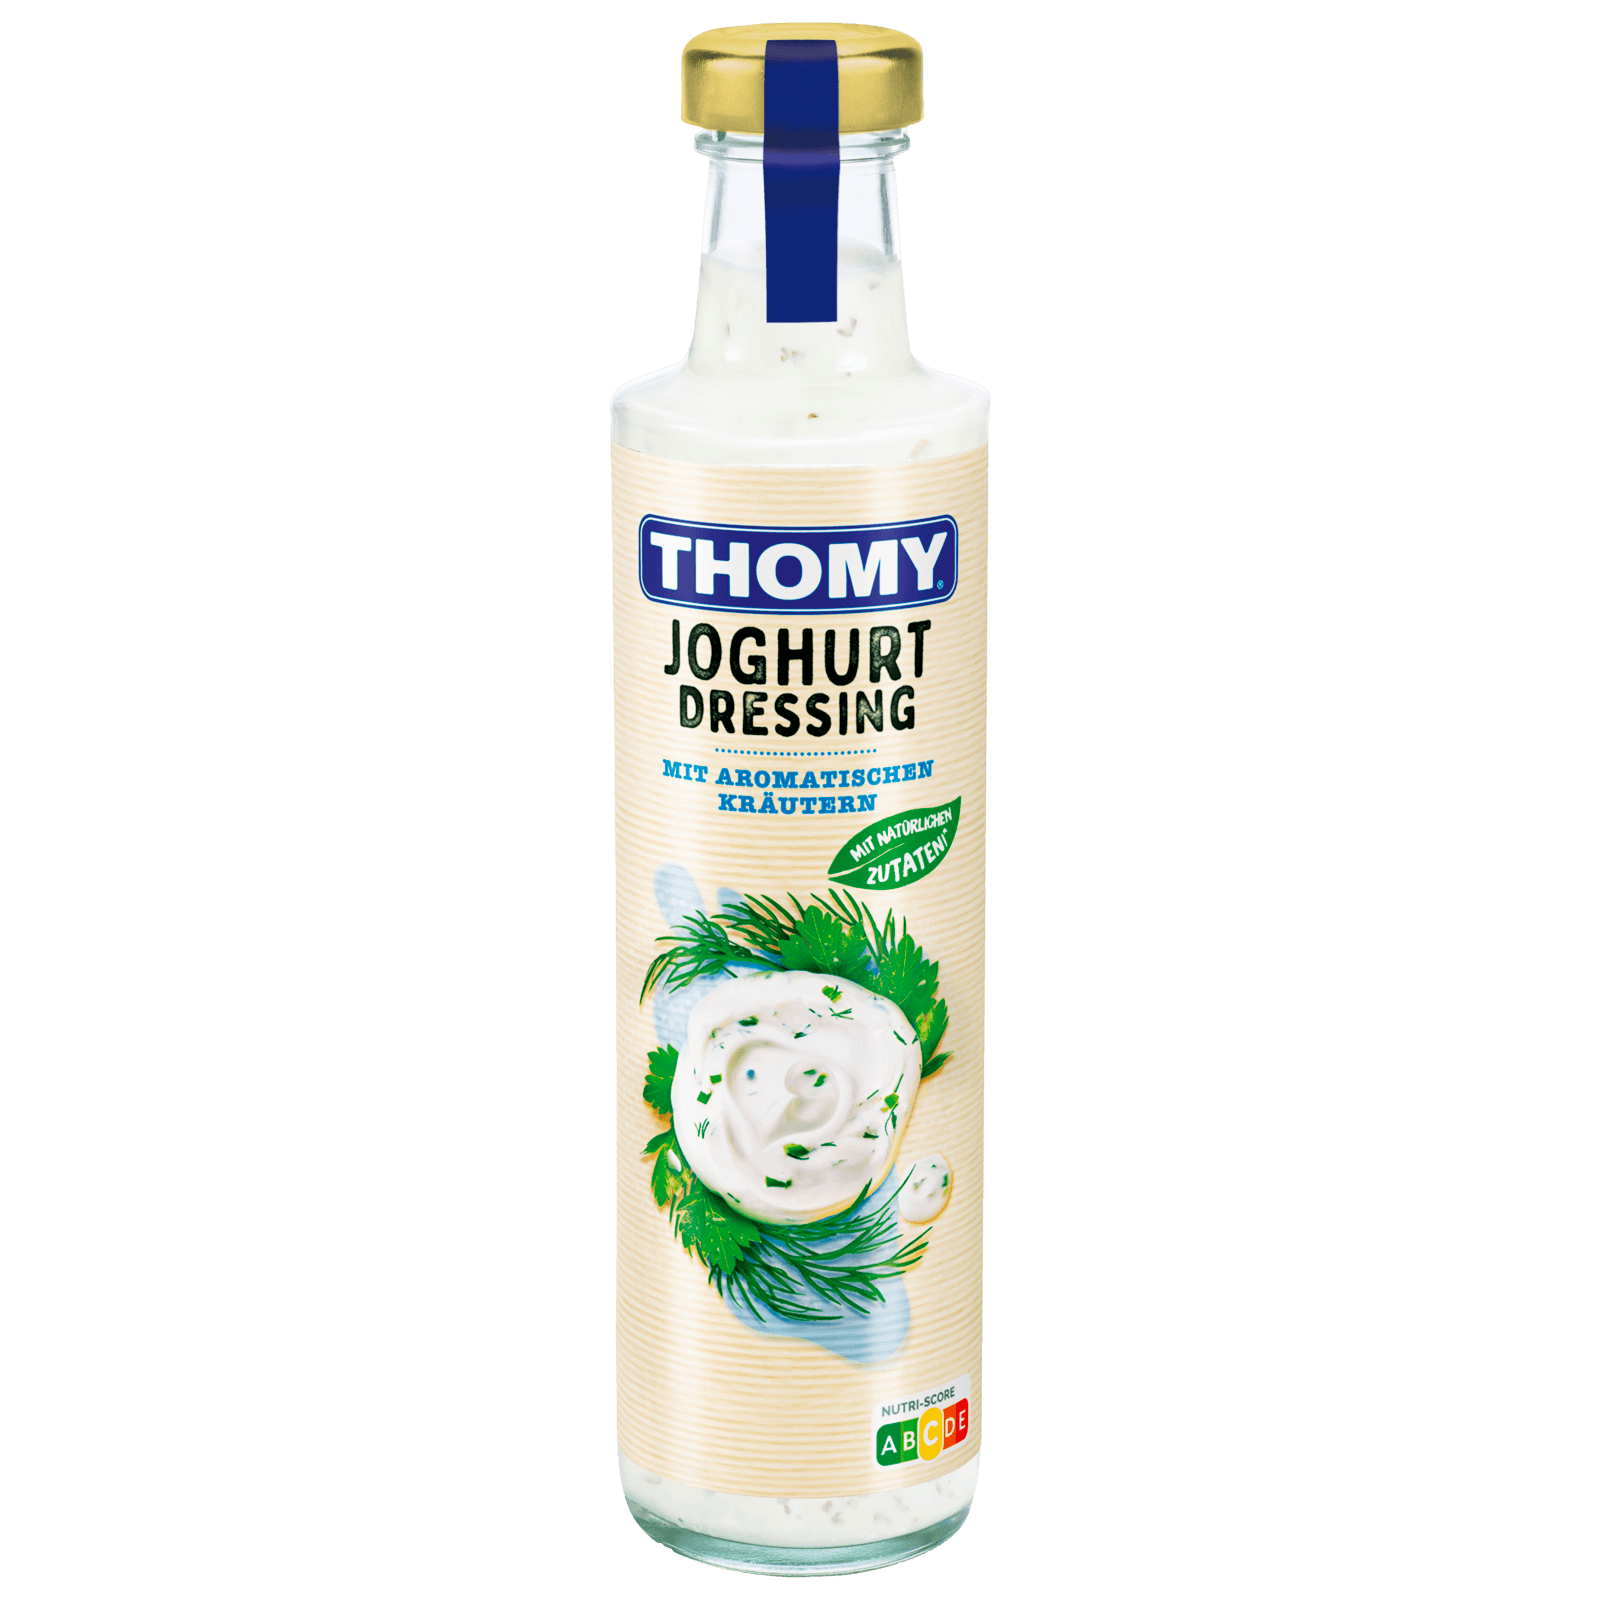 Thomy Joghurt Dressing 350ml bei REWE online bestellen!